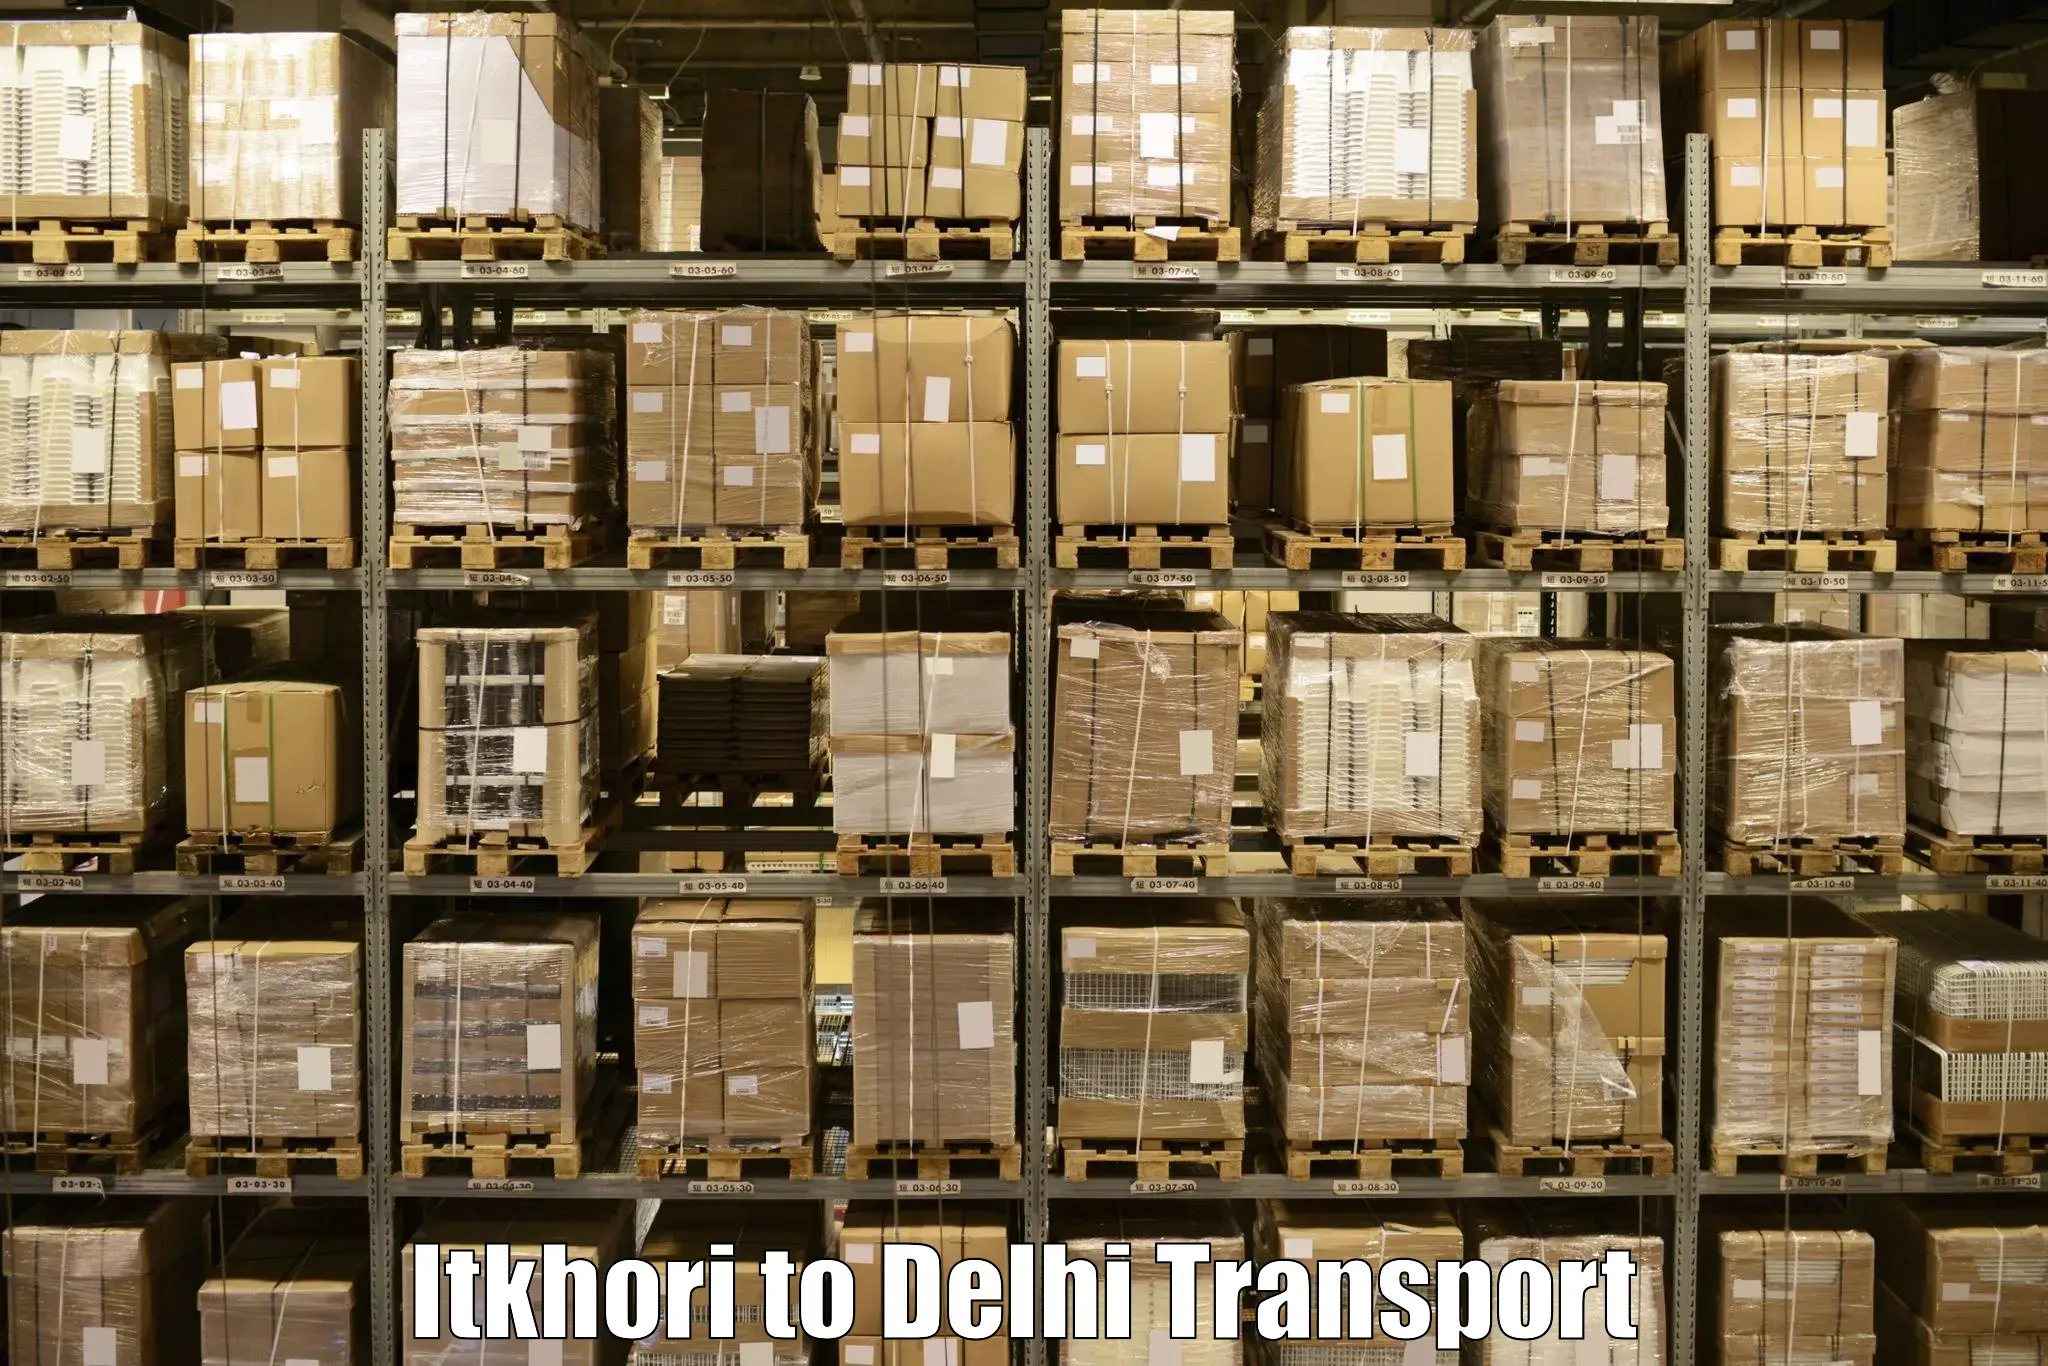 Online transport booking Itkhori to Ashok Vihar